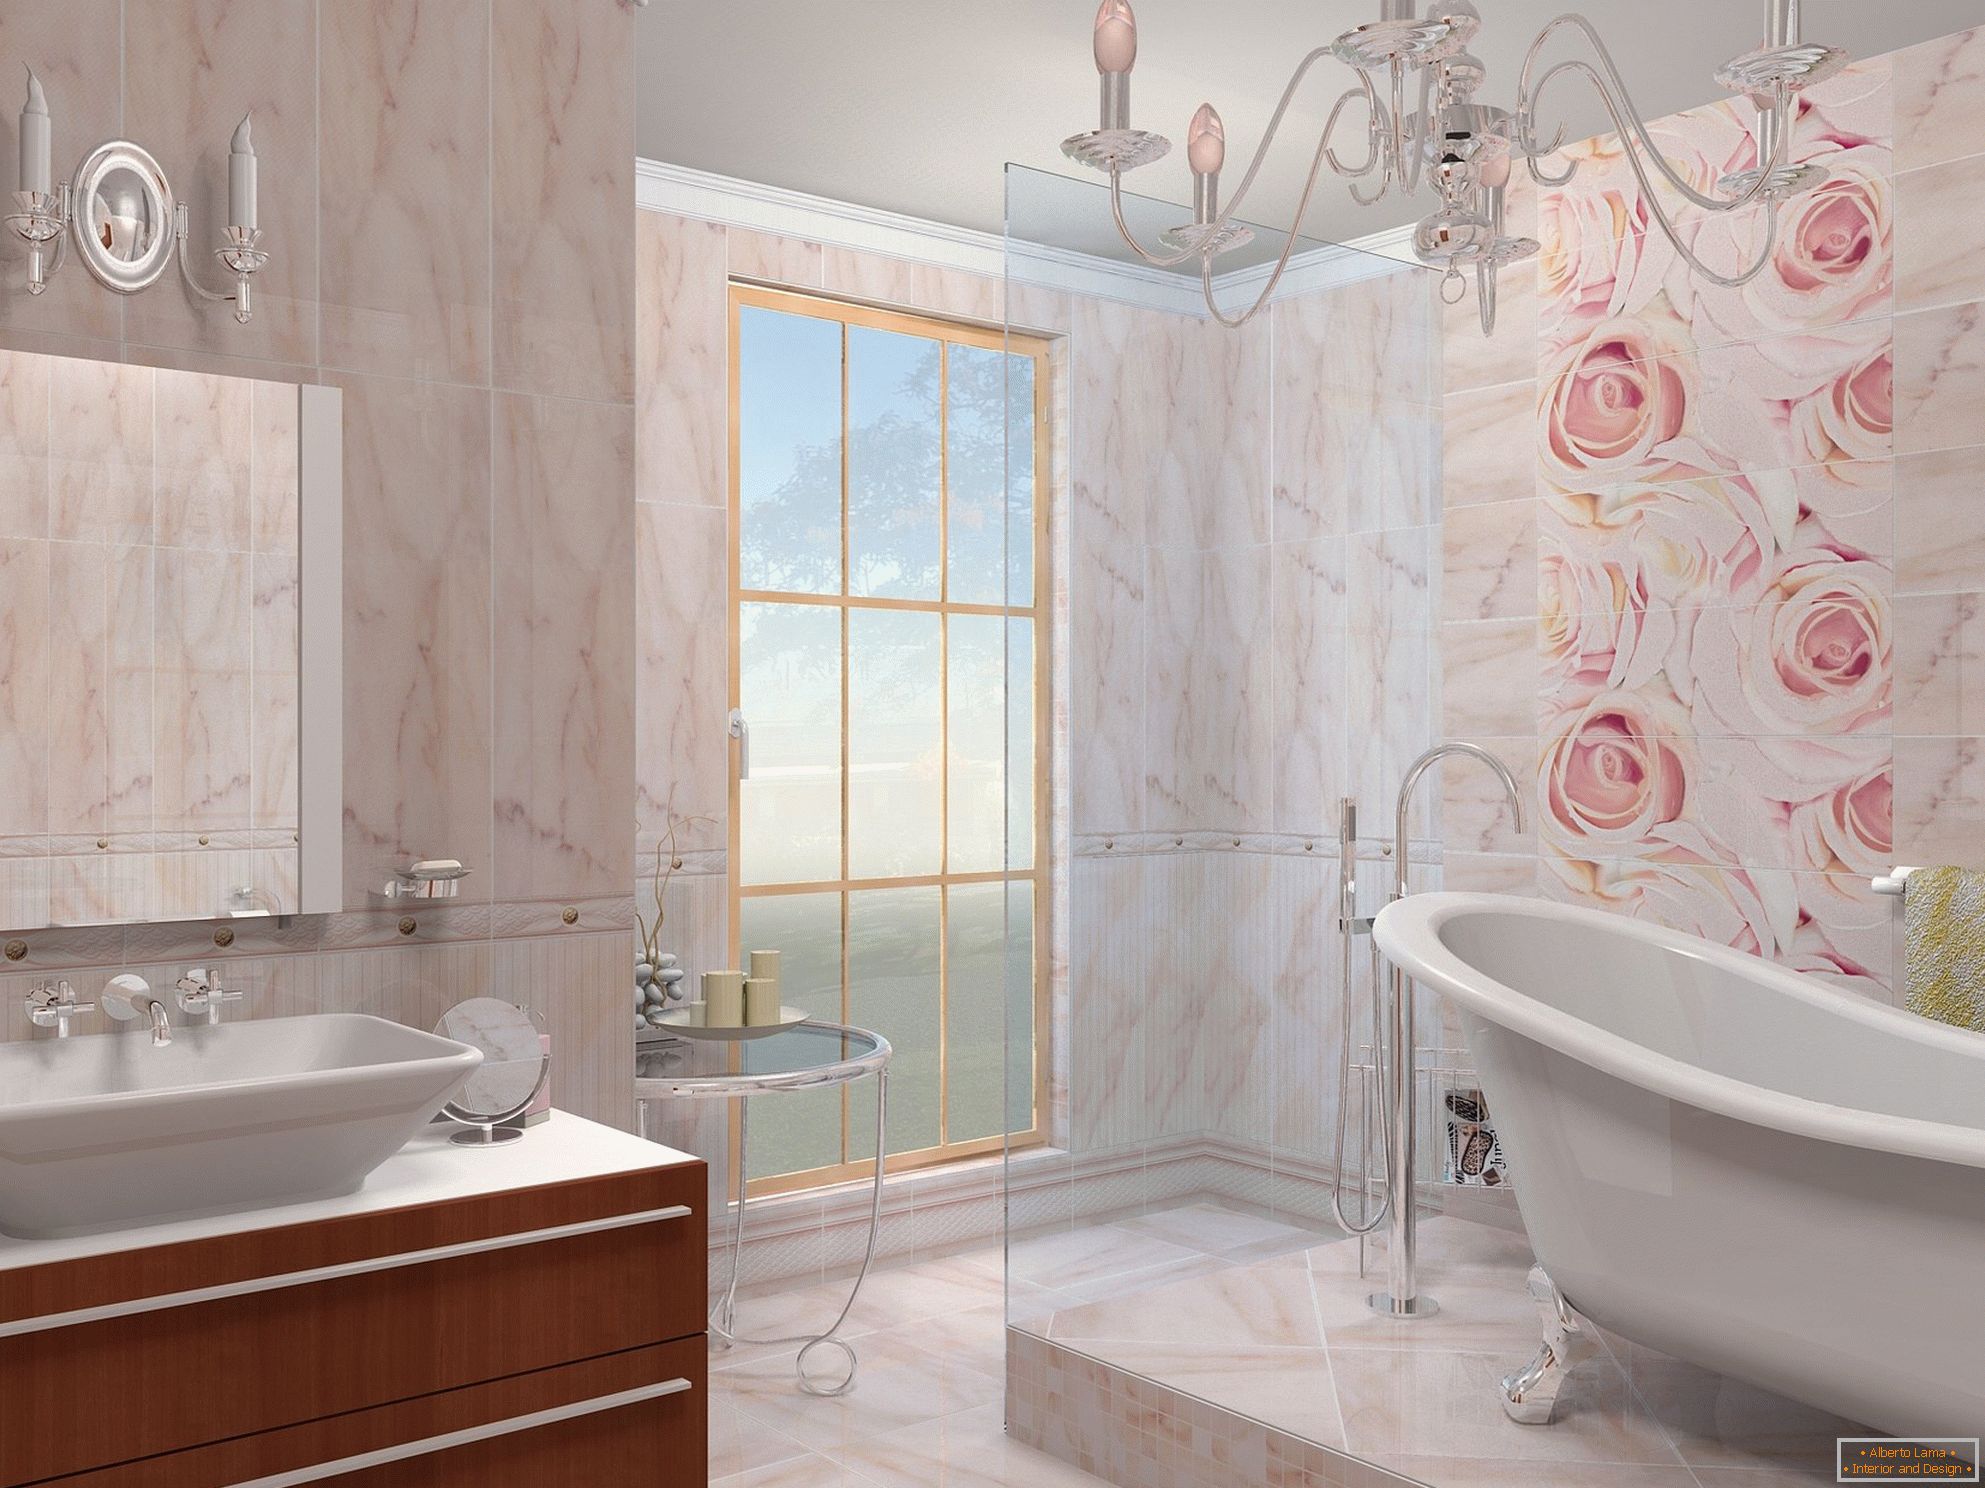 Die Kombination aus Beige und Pink im Design des Badezimmers